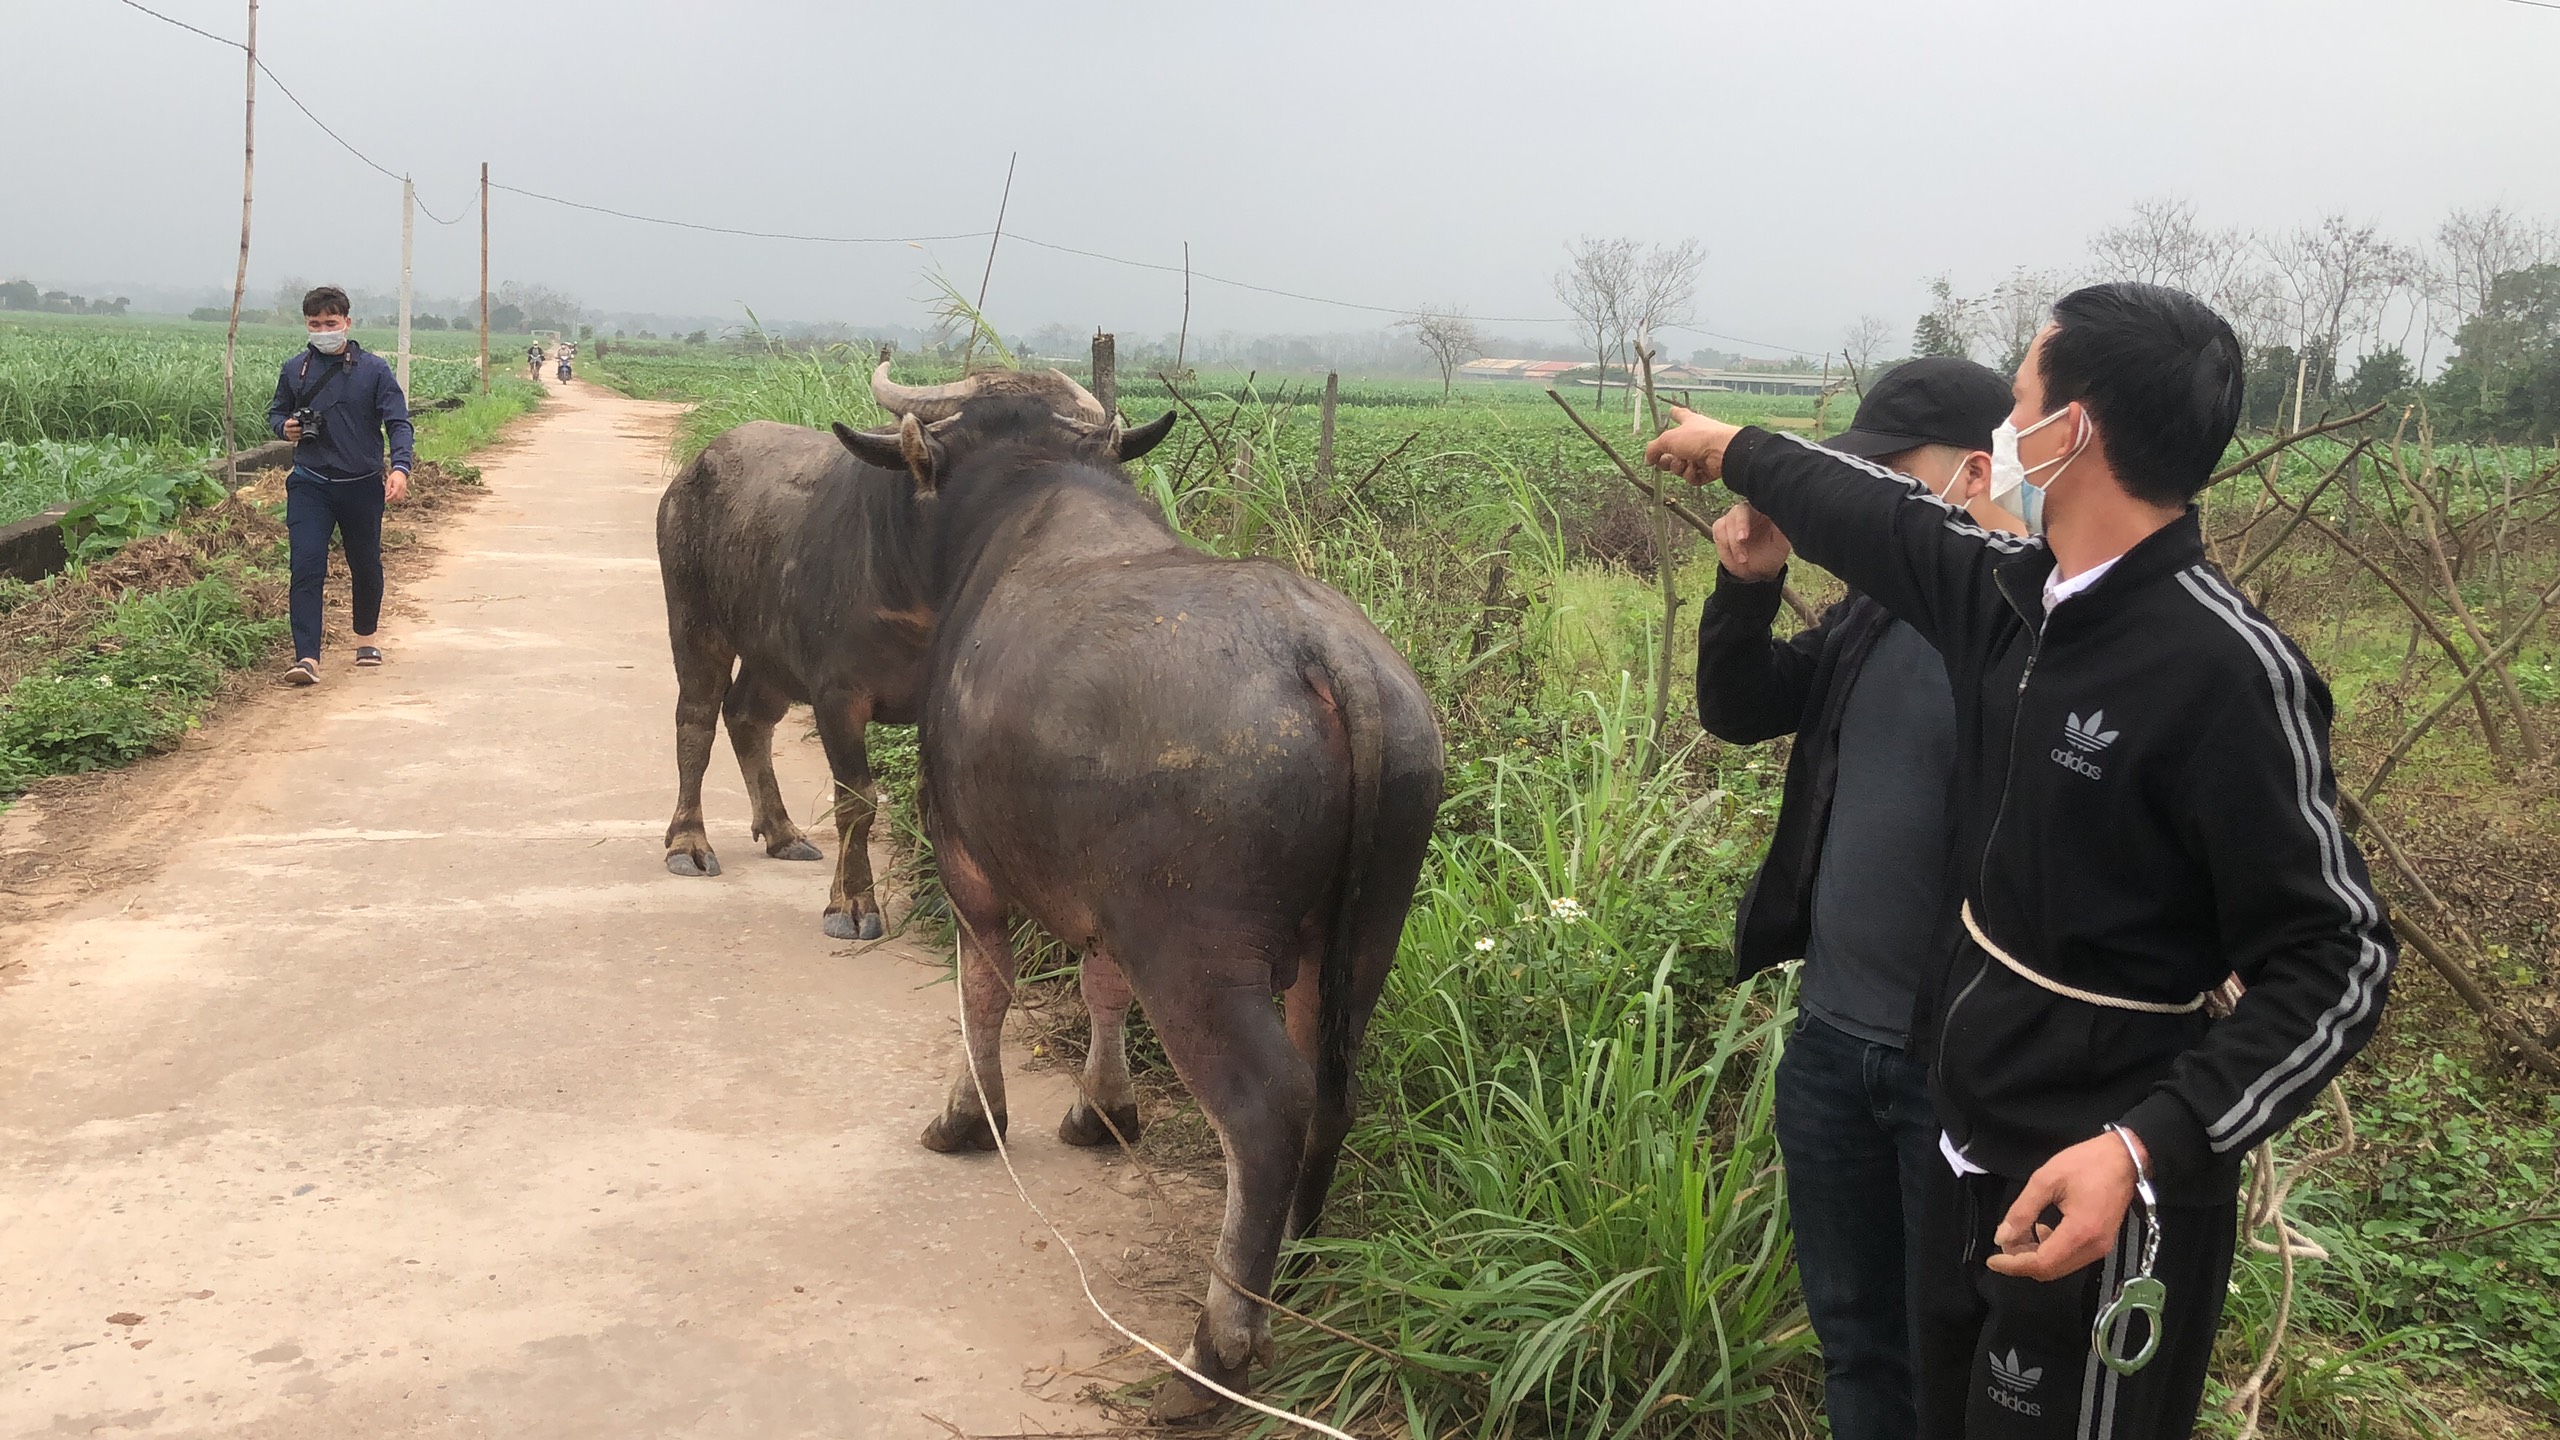 Pháp luật - Phú Thọ: Bắt 2 kẻ trộm trâu bò về mở trang trại chăn nuôi (Hình 2).